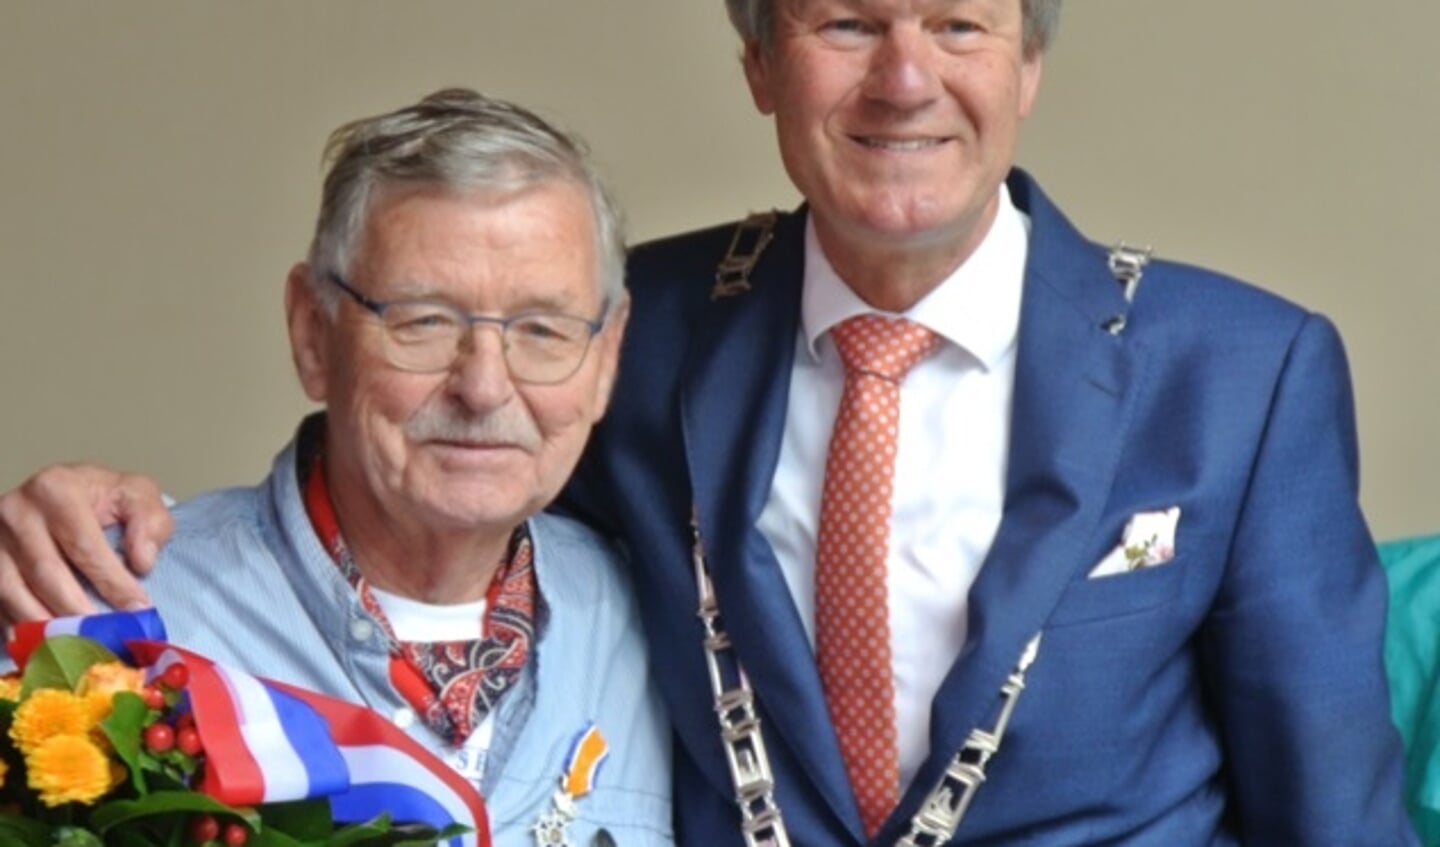 Cleem Kos van de Skulpers werd benoemd tot Lid in de Orde van Oranje-Nassau.